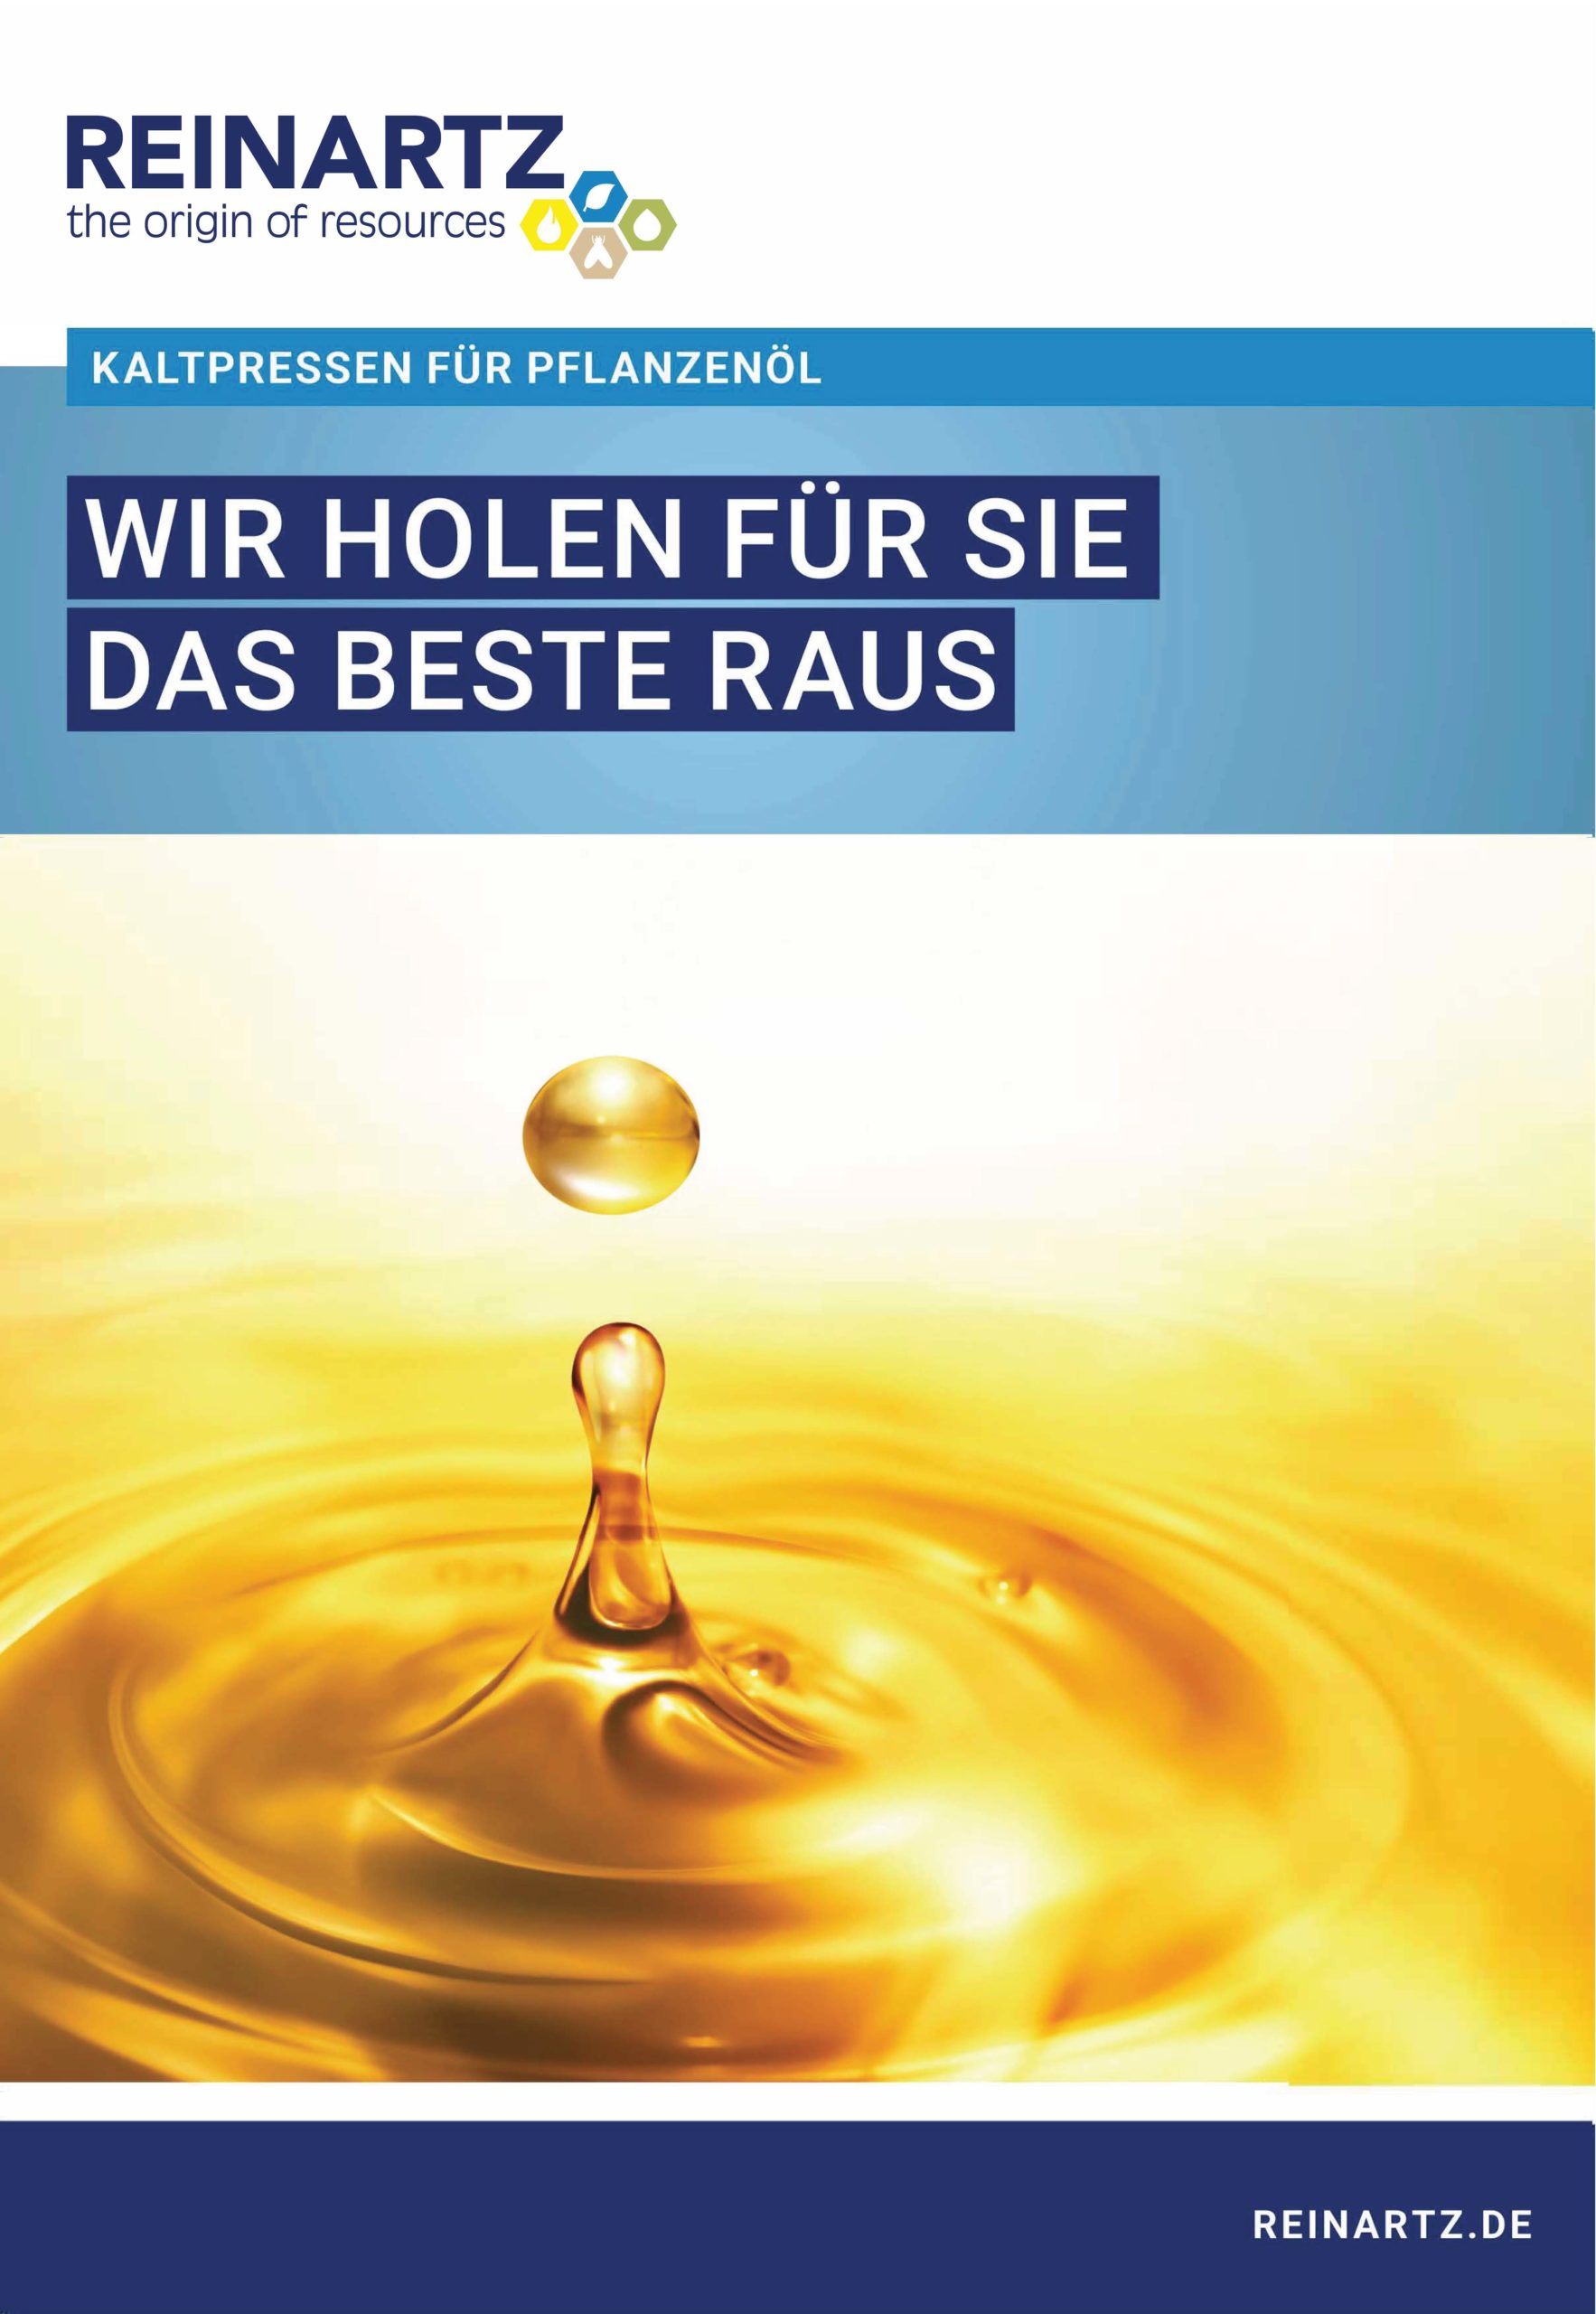 Kaltpressen für Pflanzenöl - Öffnet ein PDF Dokument